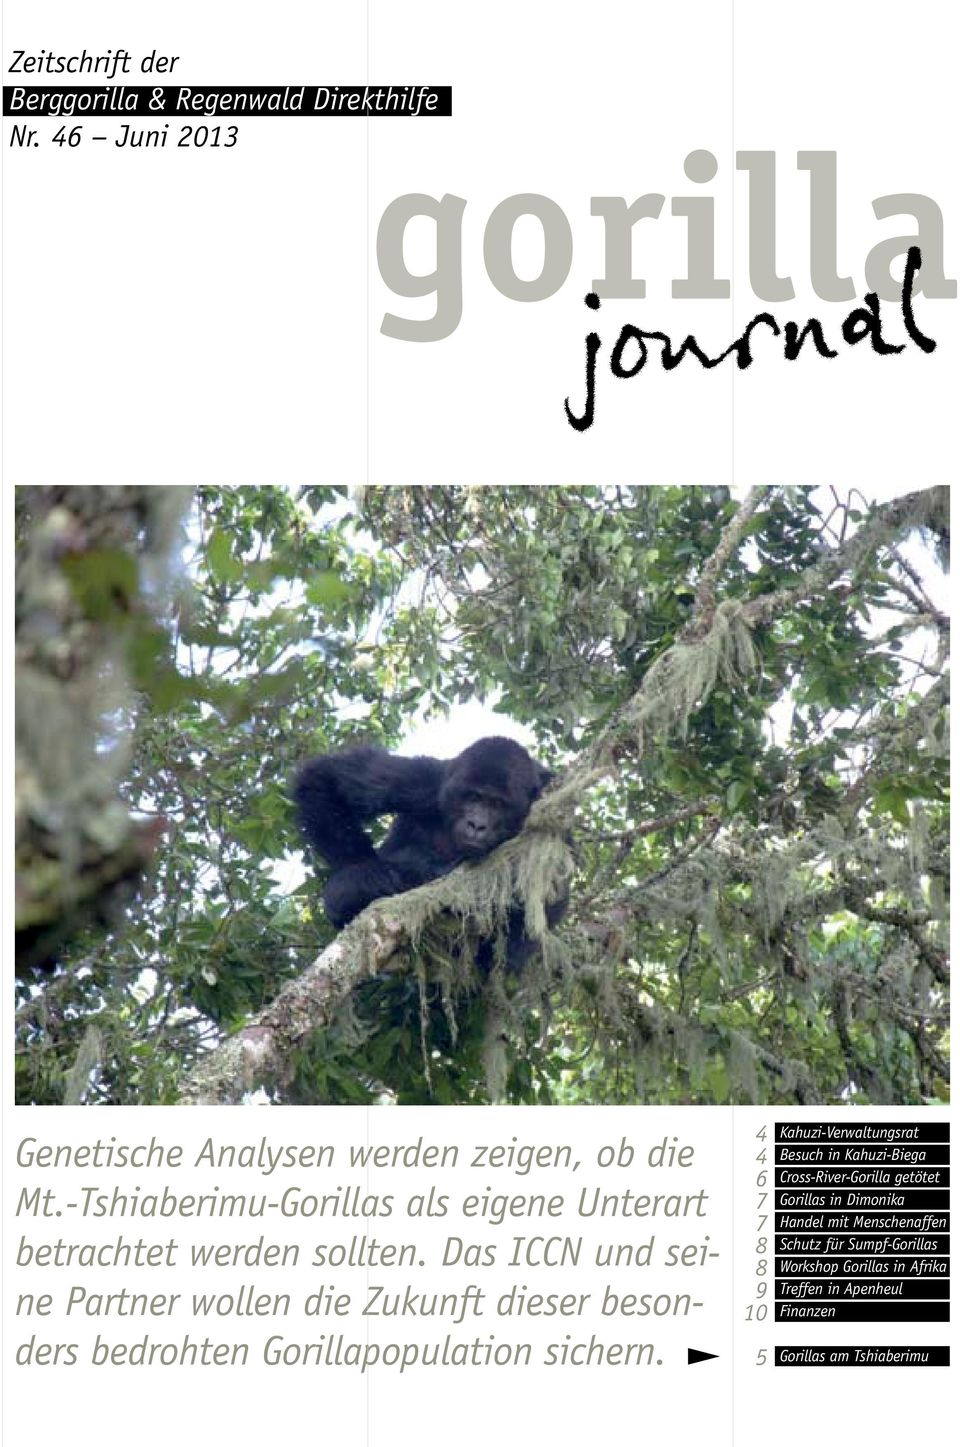 Das ICCN und seine Partner wollen die Zukunft dieser besonders bedrohten Gorillapopulation sichern.